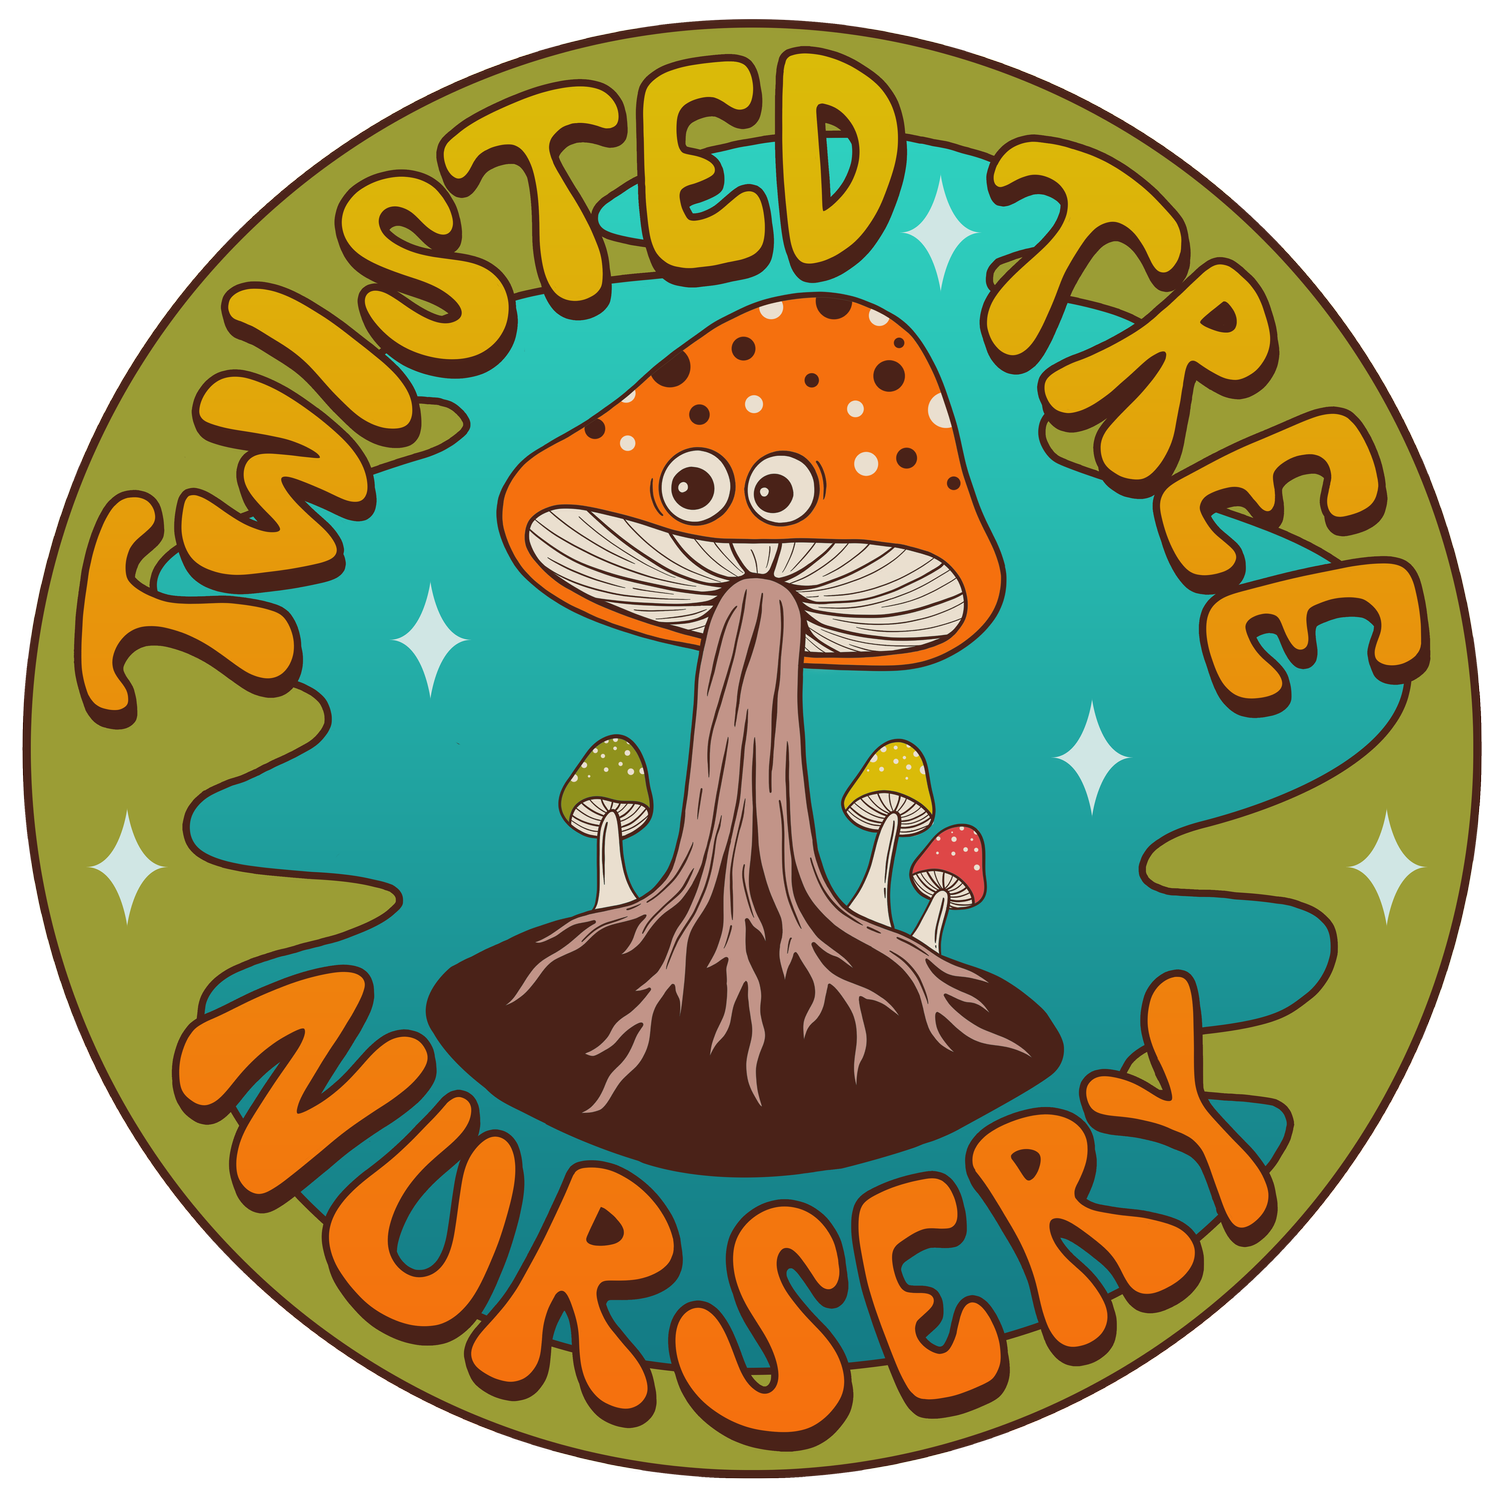 Twisted Tree Nursery